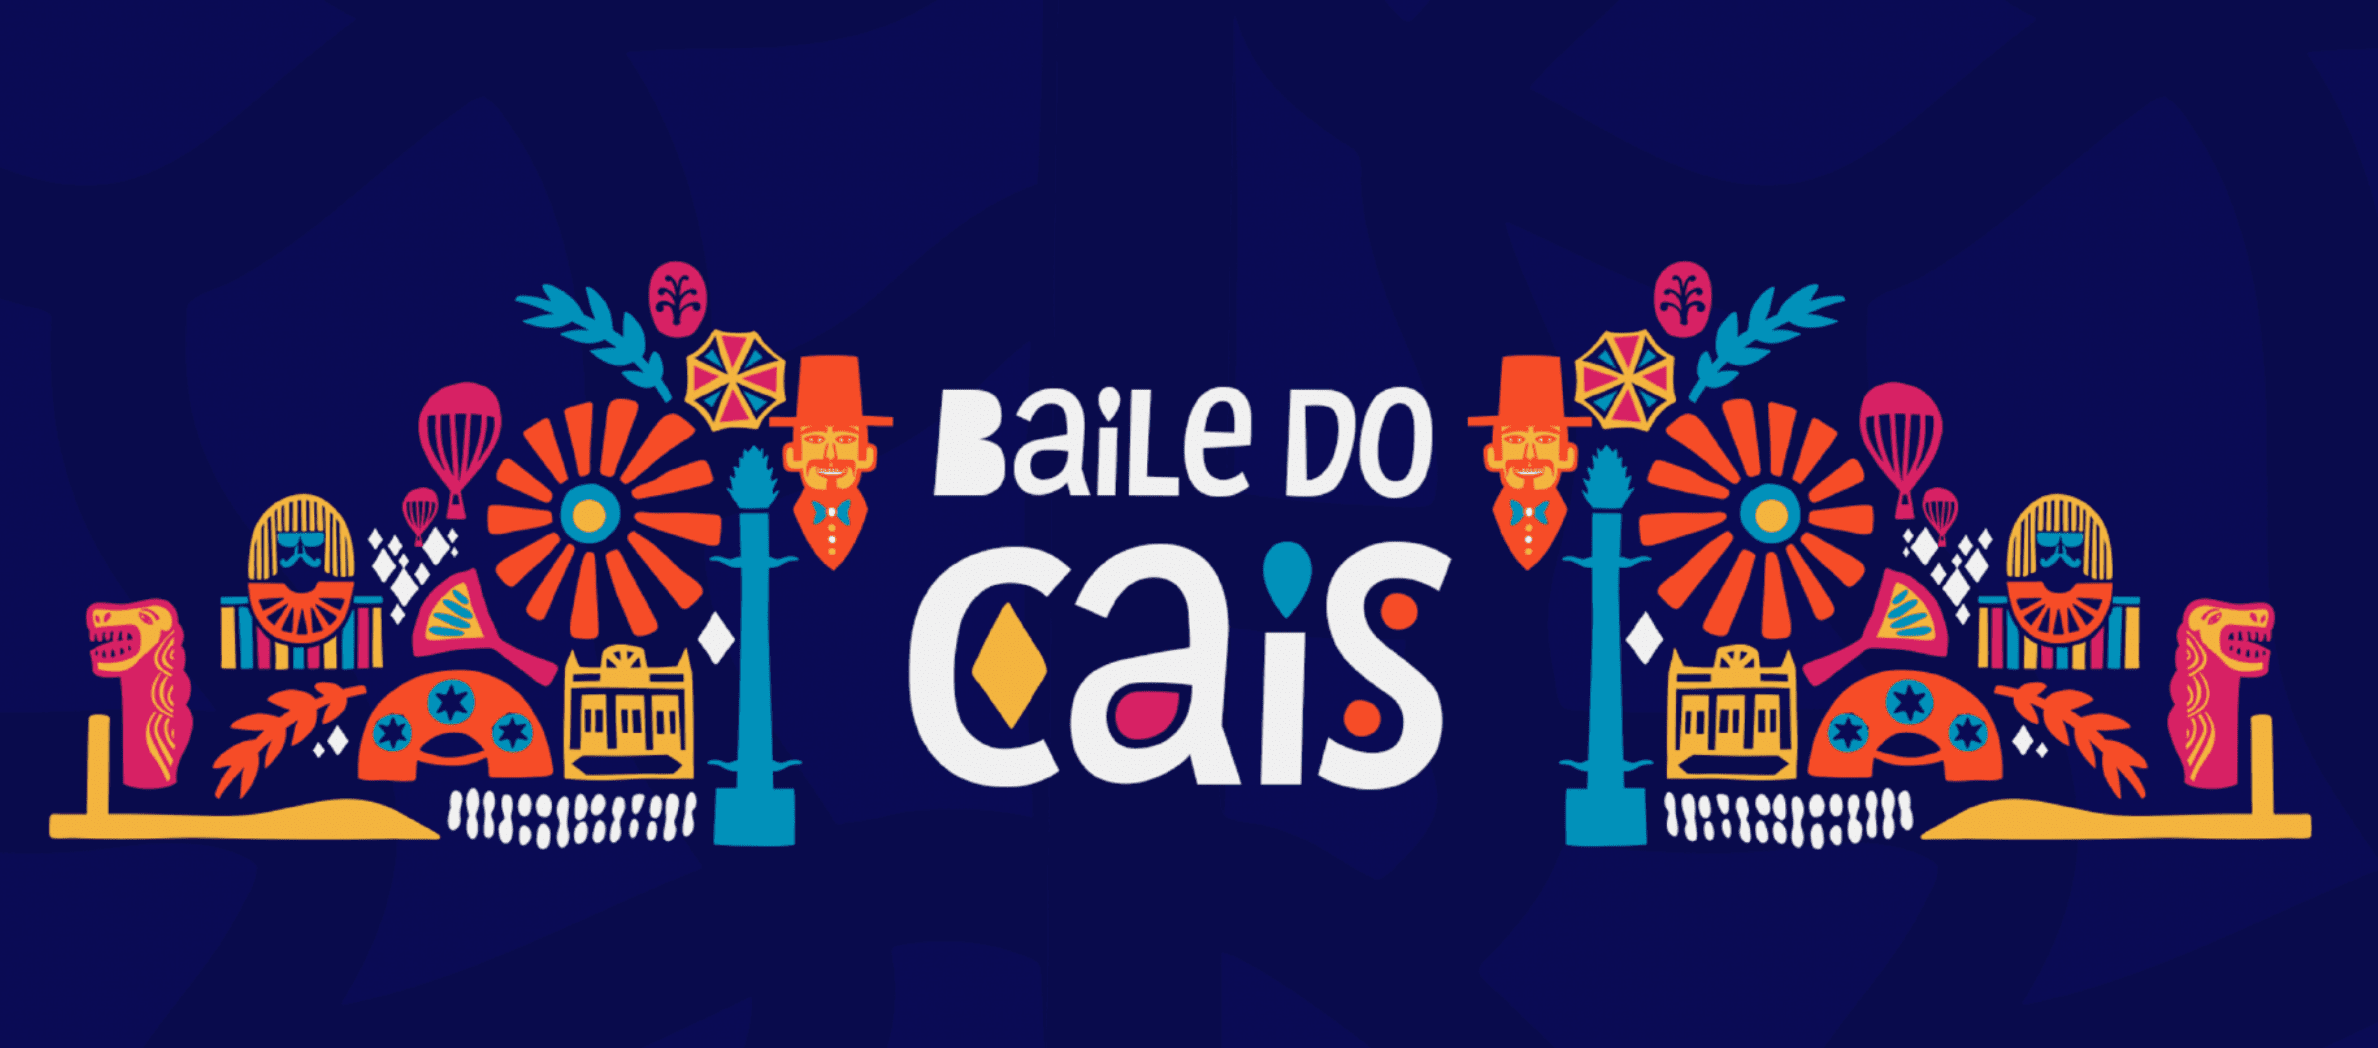 Branding com ID Visual do Baile do Cais.